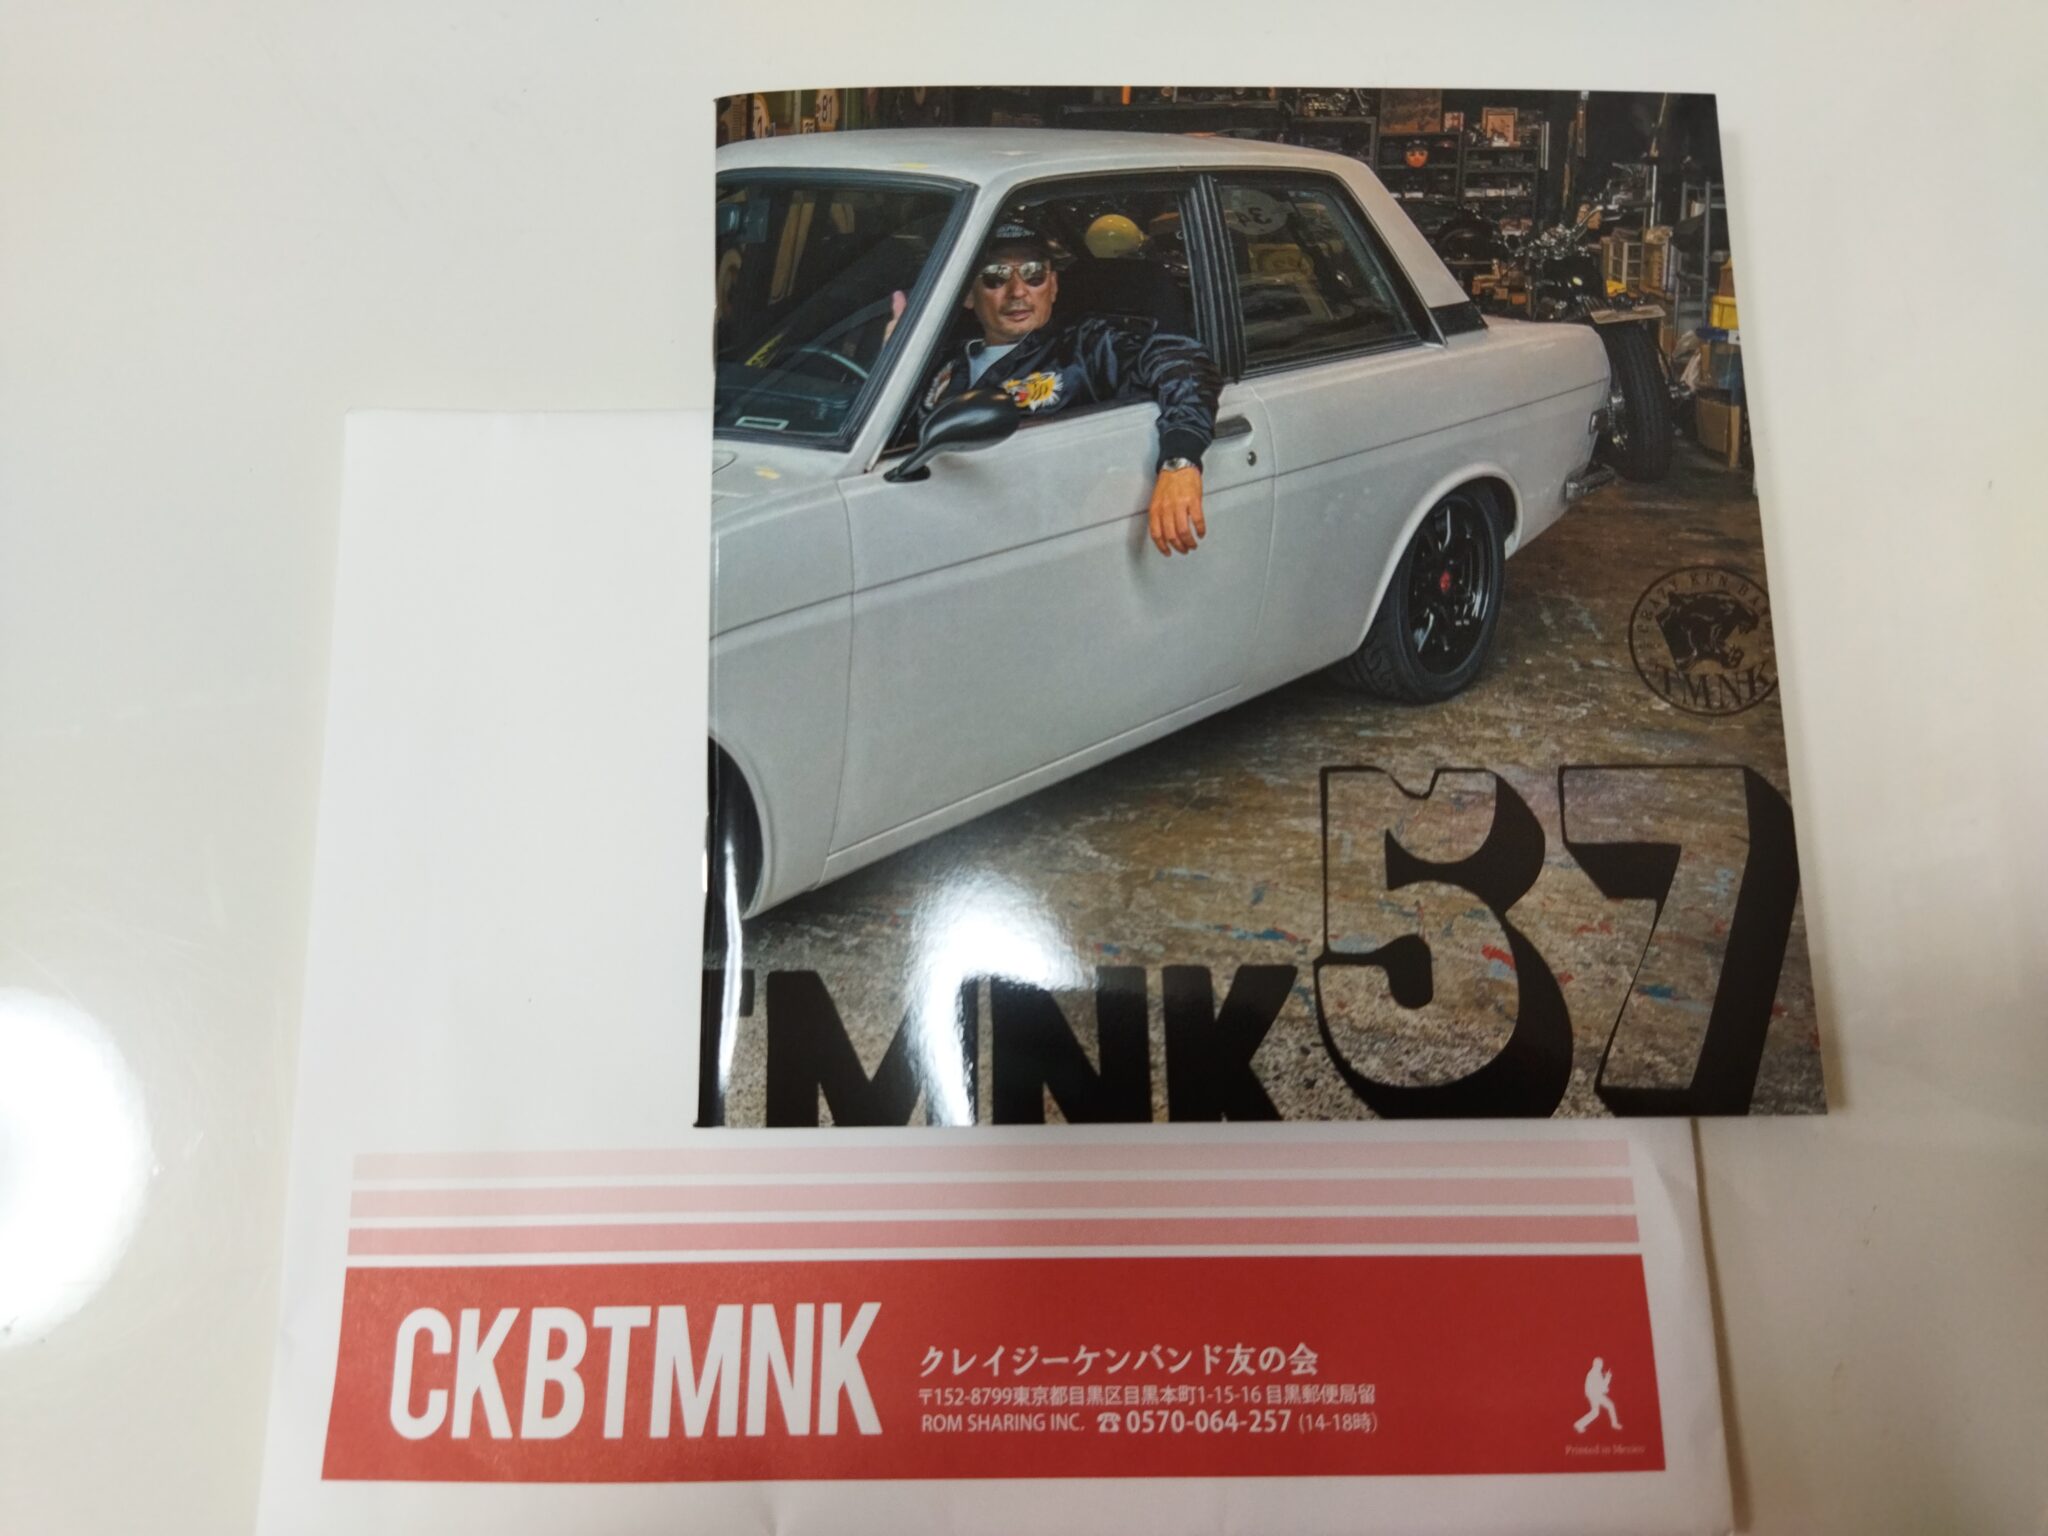 クレイジーケンバンドTMNK会報 vol.57届いた！ - ぶらっくまのブログ